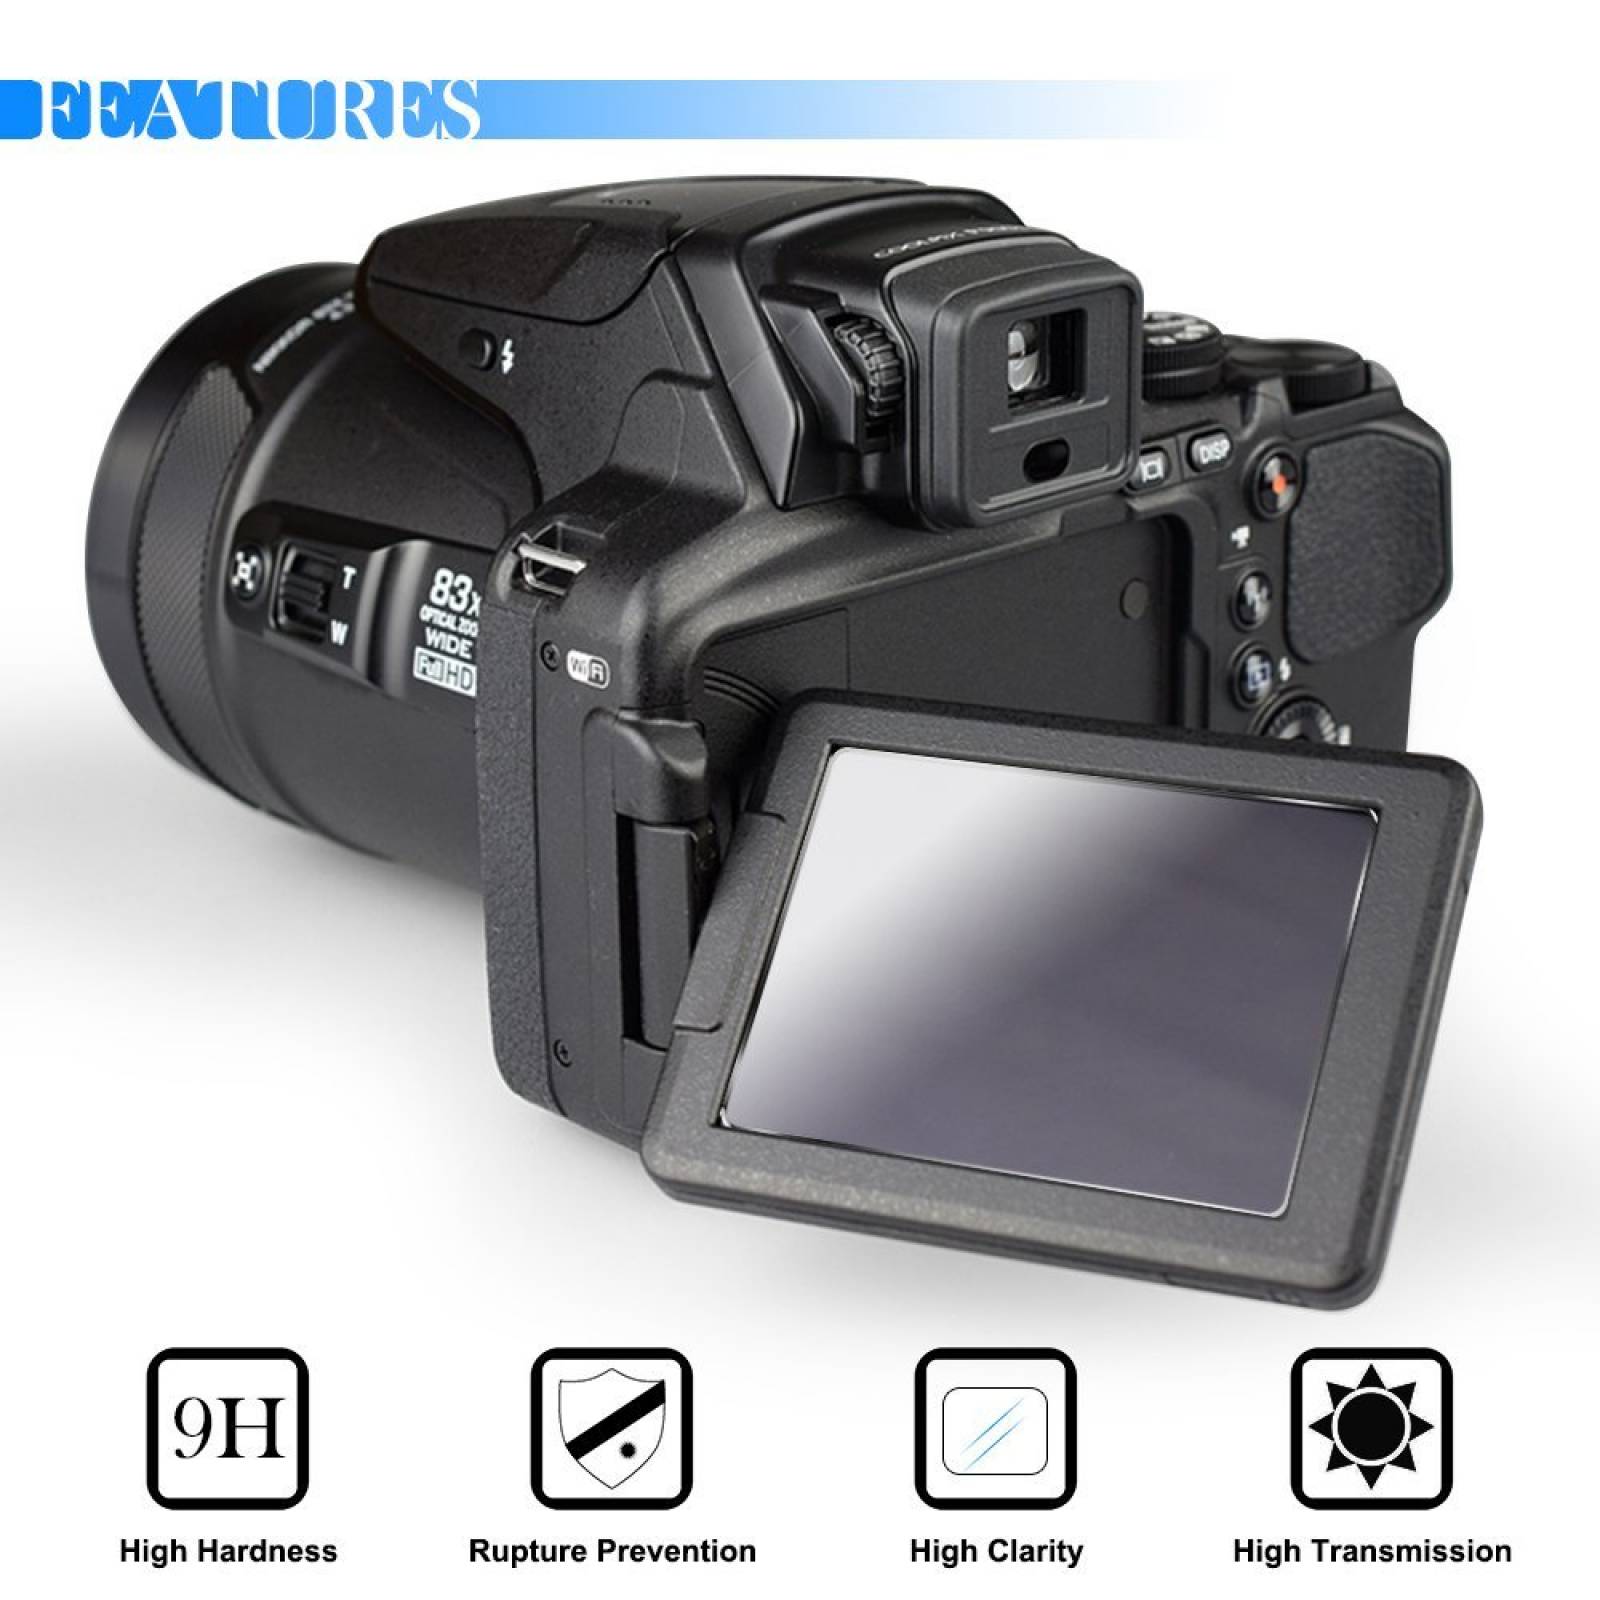 B:Protector pantalla cámara Nikon Coolpix P600 P900 P6 -Transp